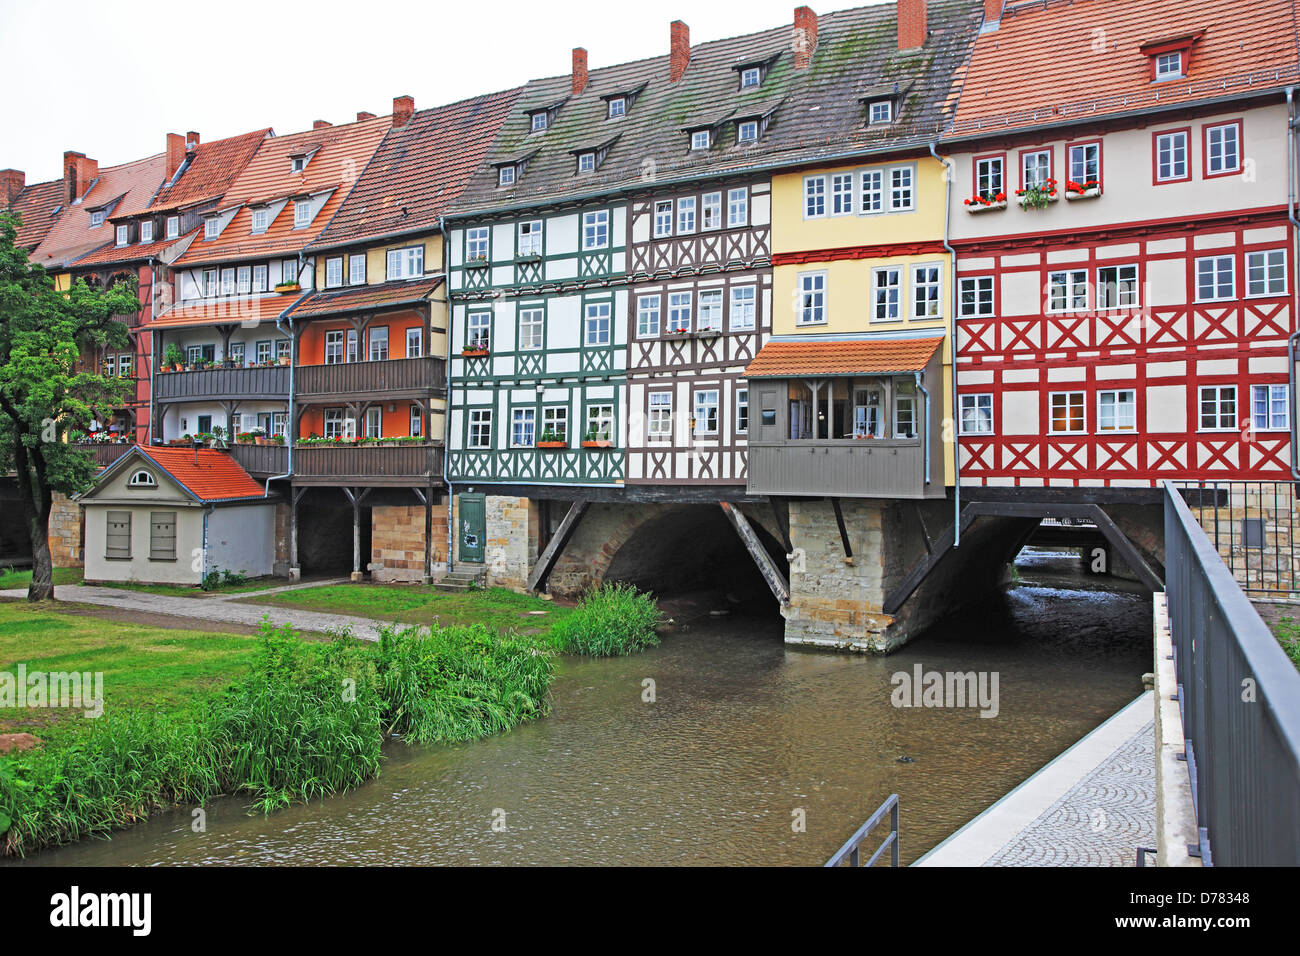 Germany, Thuringia, Erfurt, Kräerbrücke (Kräemer Bridge) Stock Photo